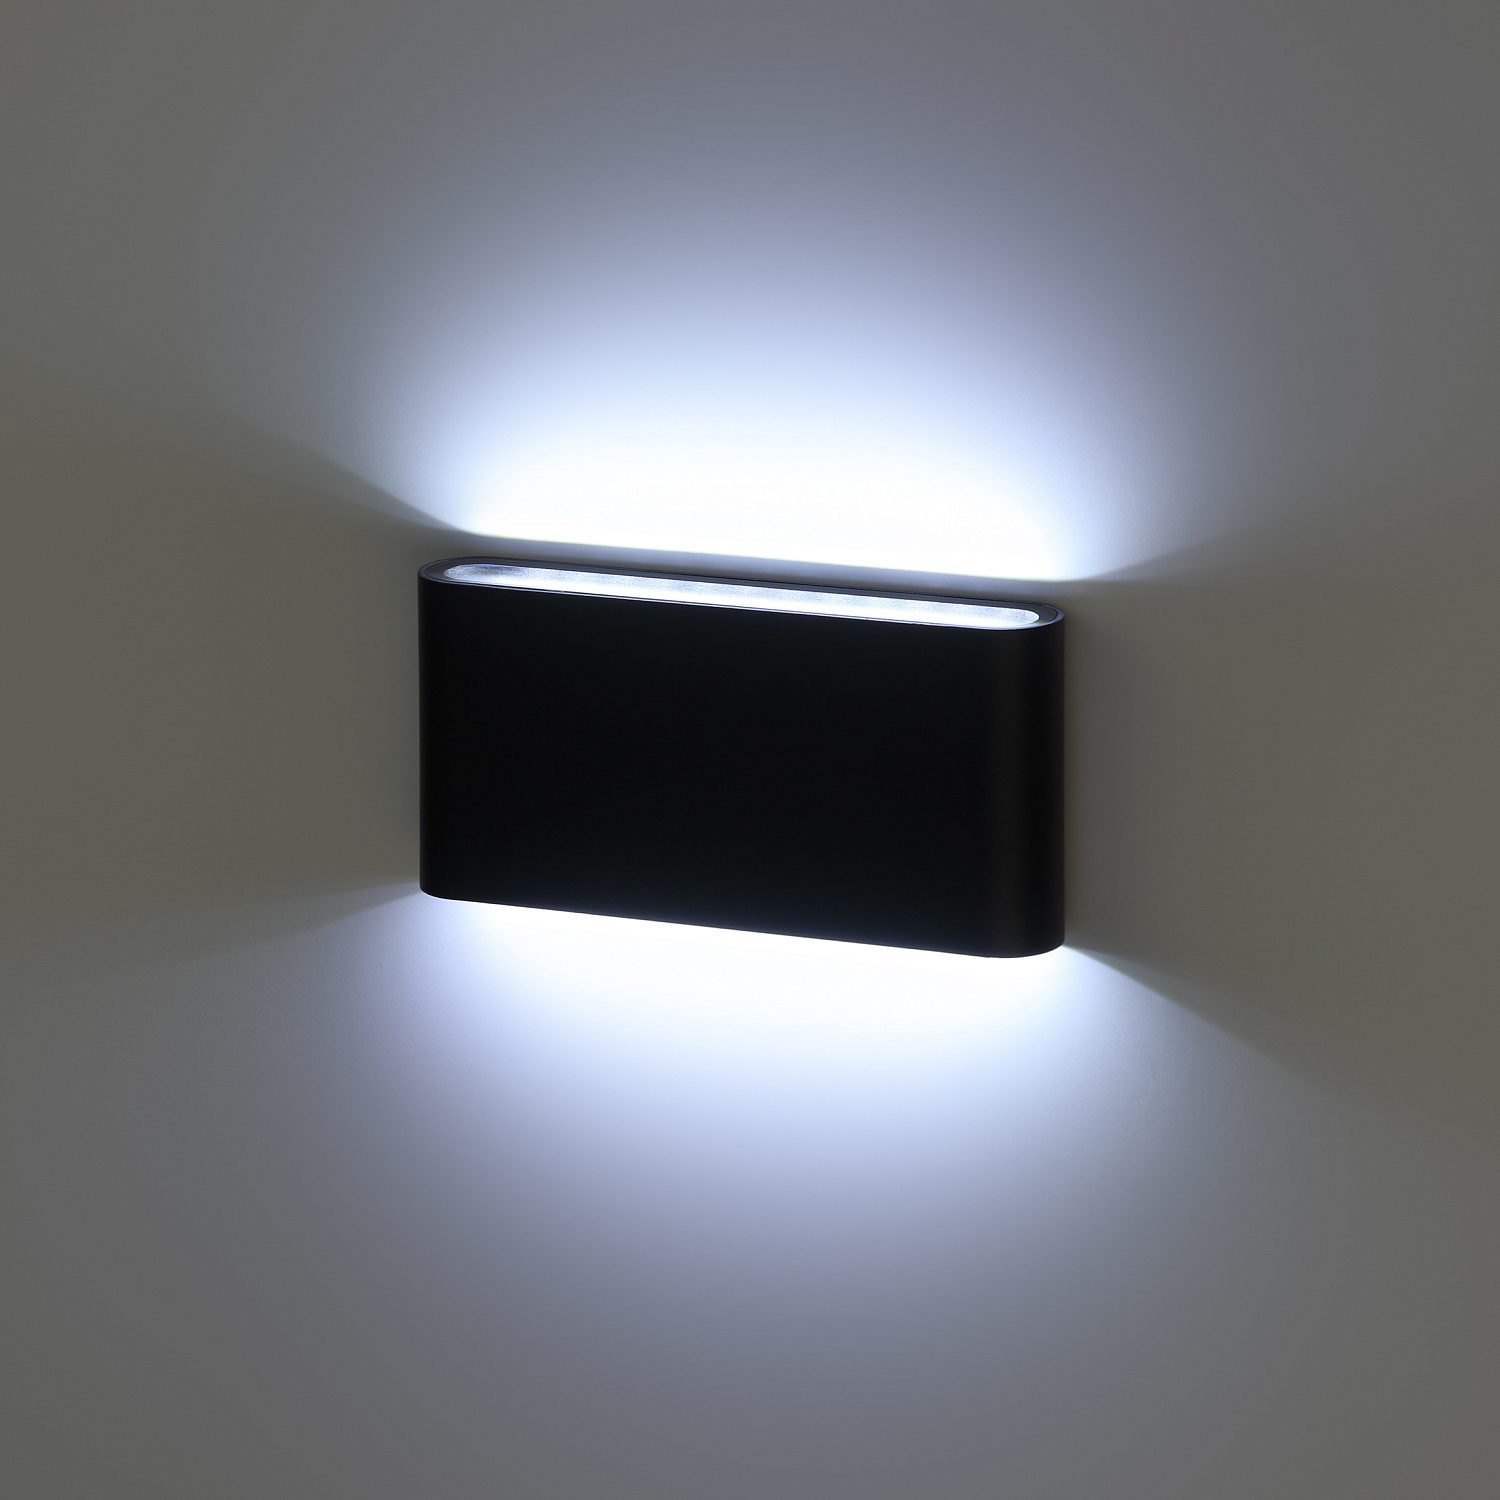 Декоративная подсветка ЭРА WL41 BK светодиодная 10Вт 3500К черный IP54 для интерьера, фасадов зданий Б0054417 ЭРА (Энергия света)